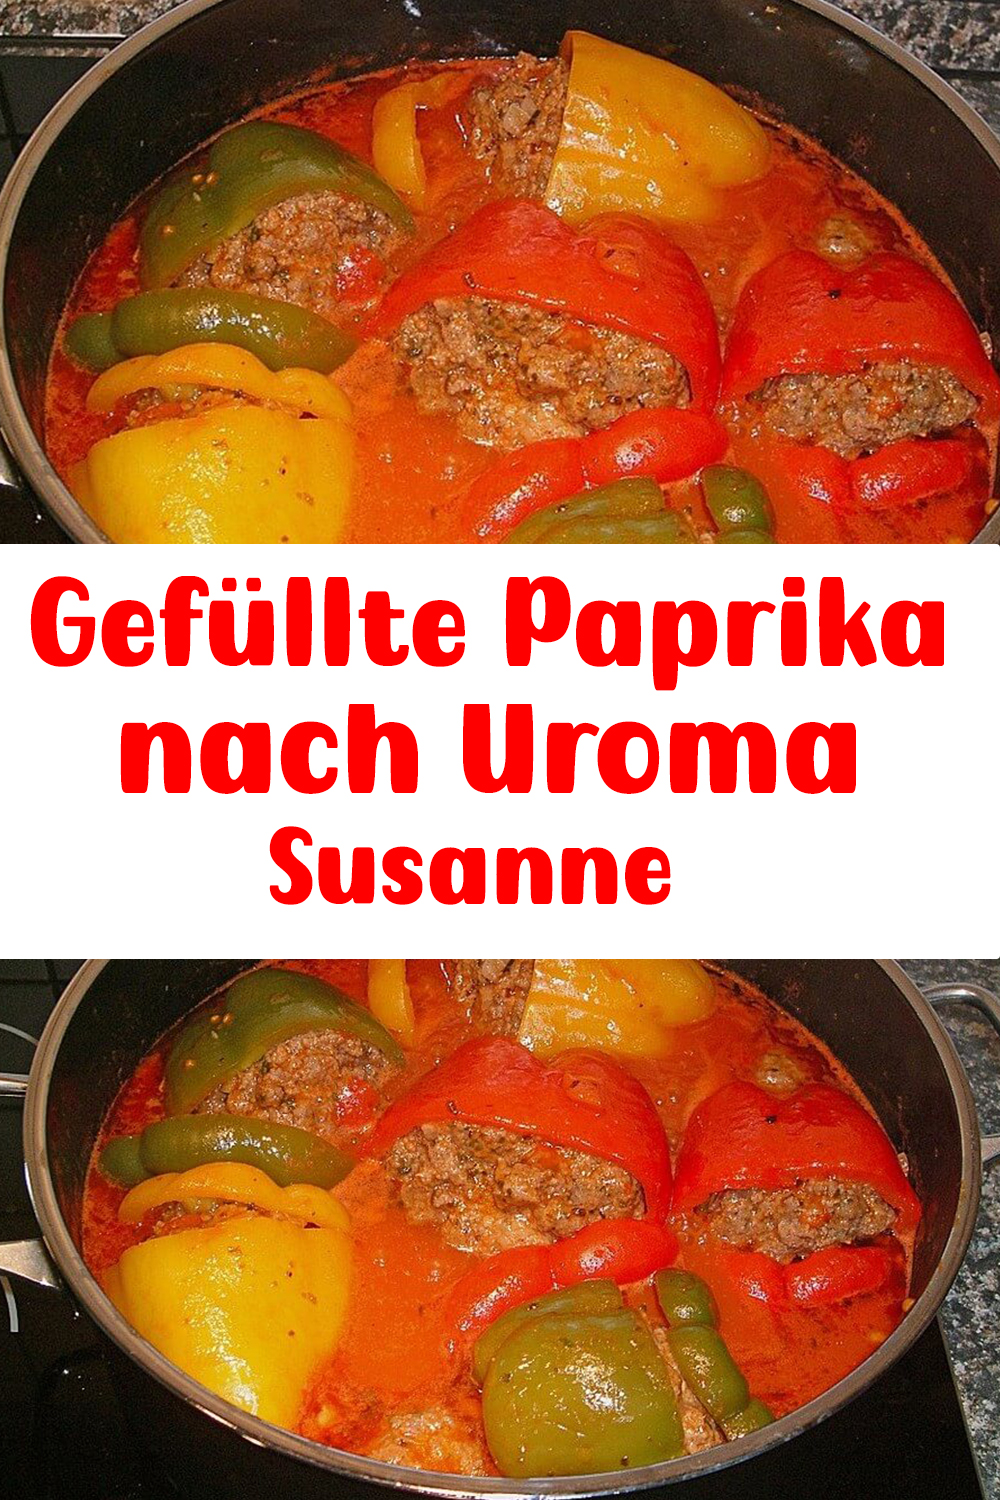 Gefüllte Paprika nach Uroma Susanne